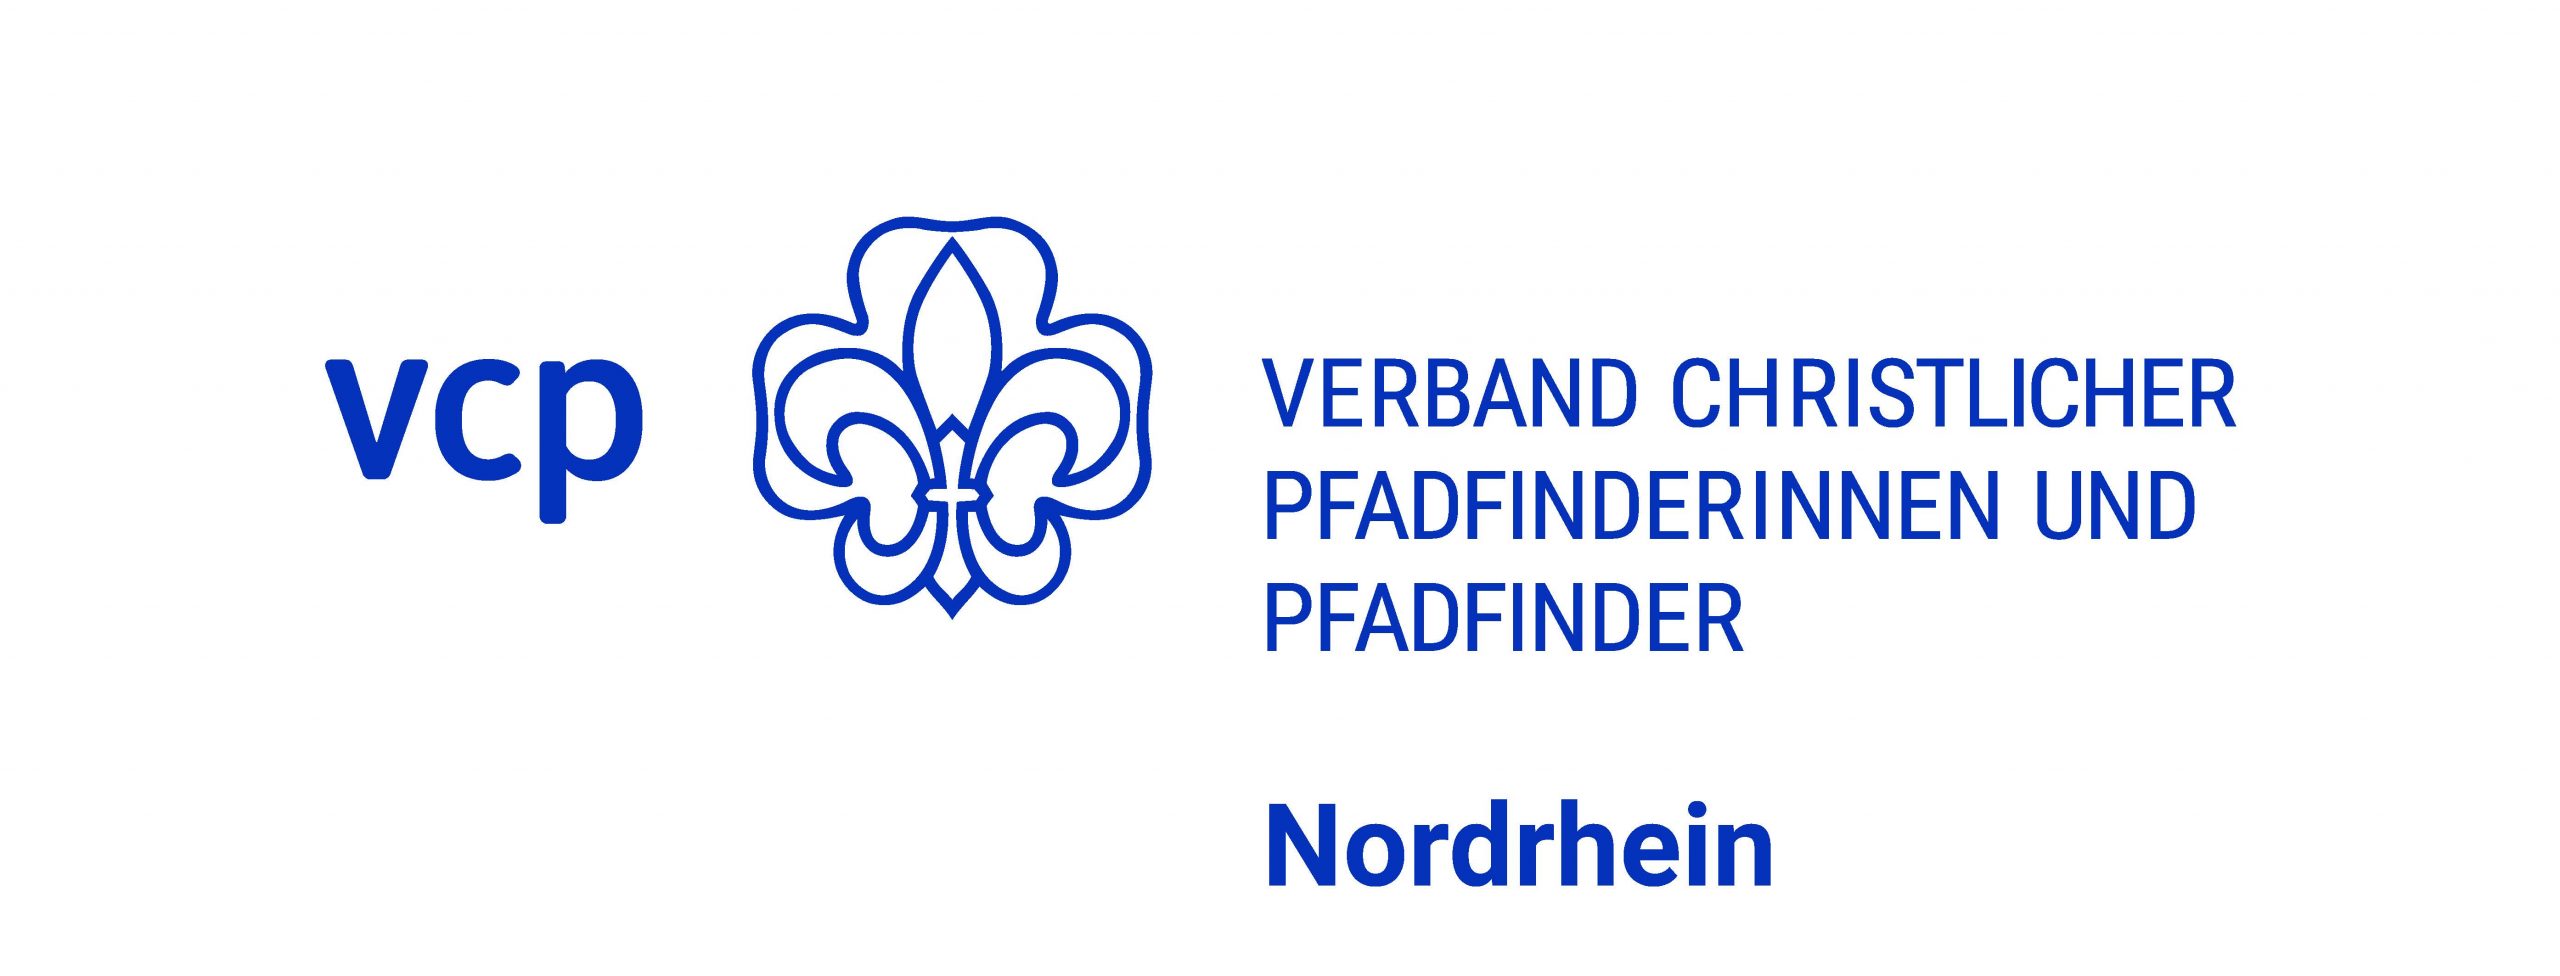 VCP Nordrhein